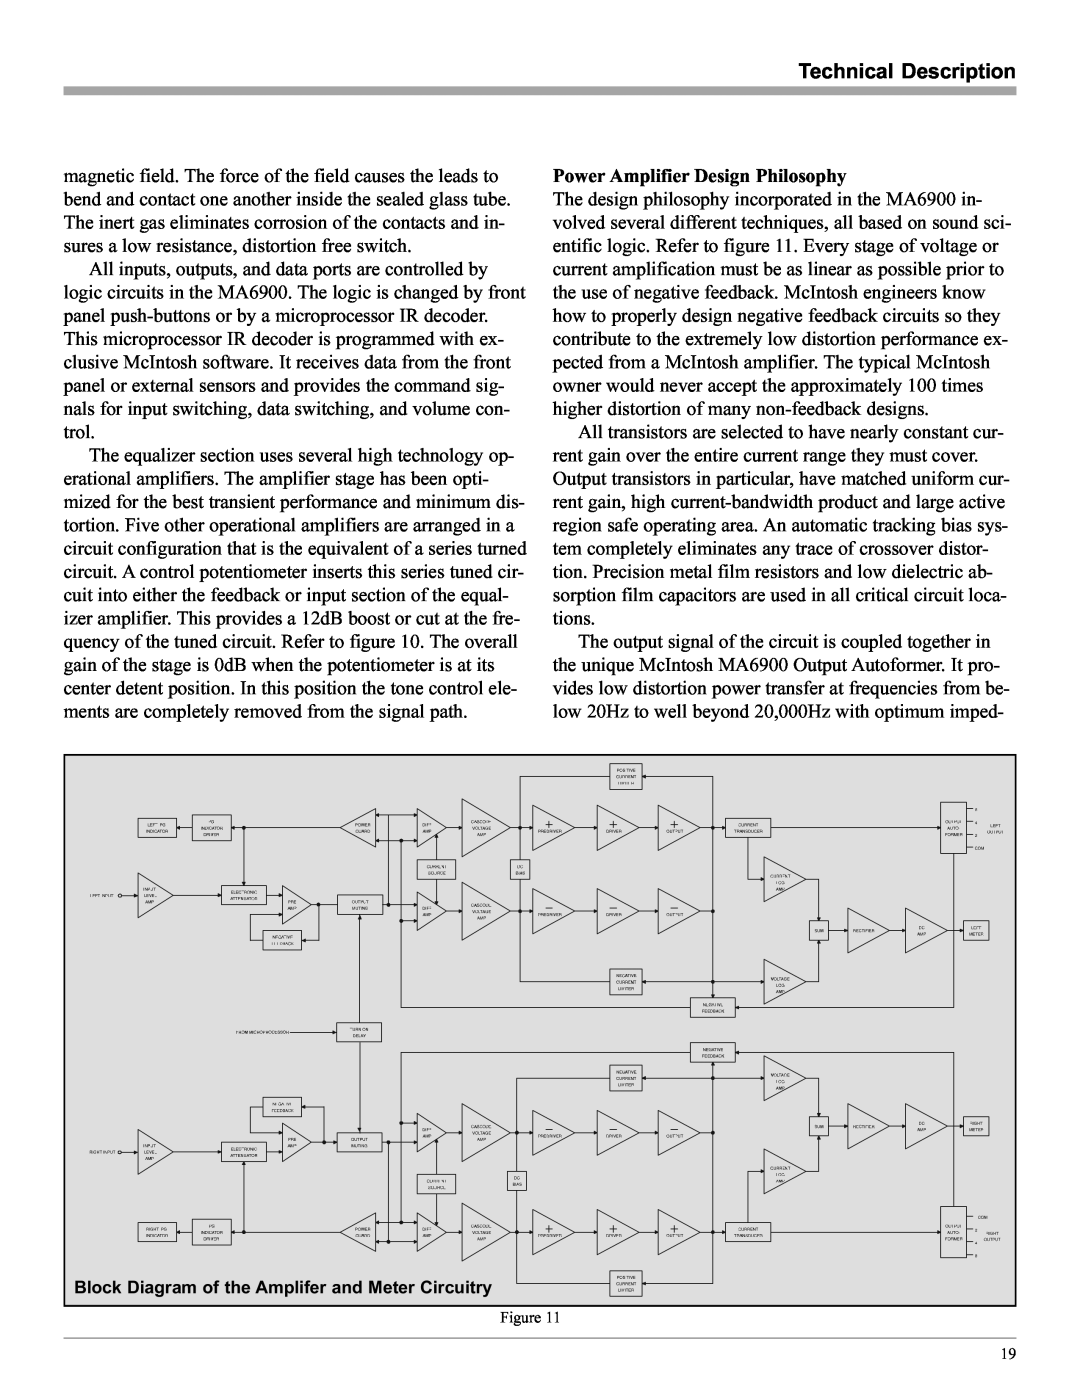 McIntosh MA6900 manual Technical Description, Power Amplifier Design Philosophy 